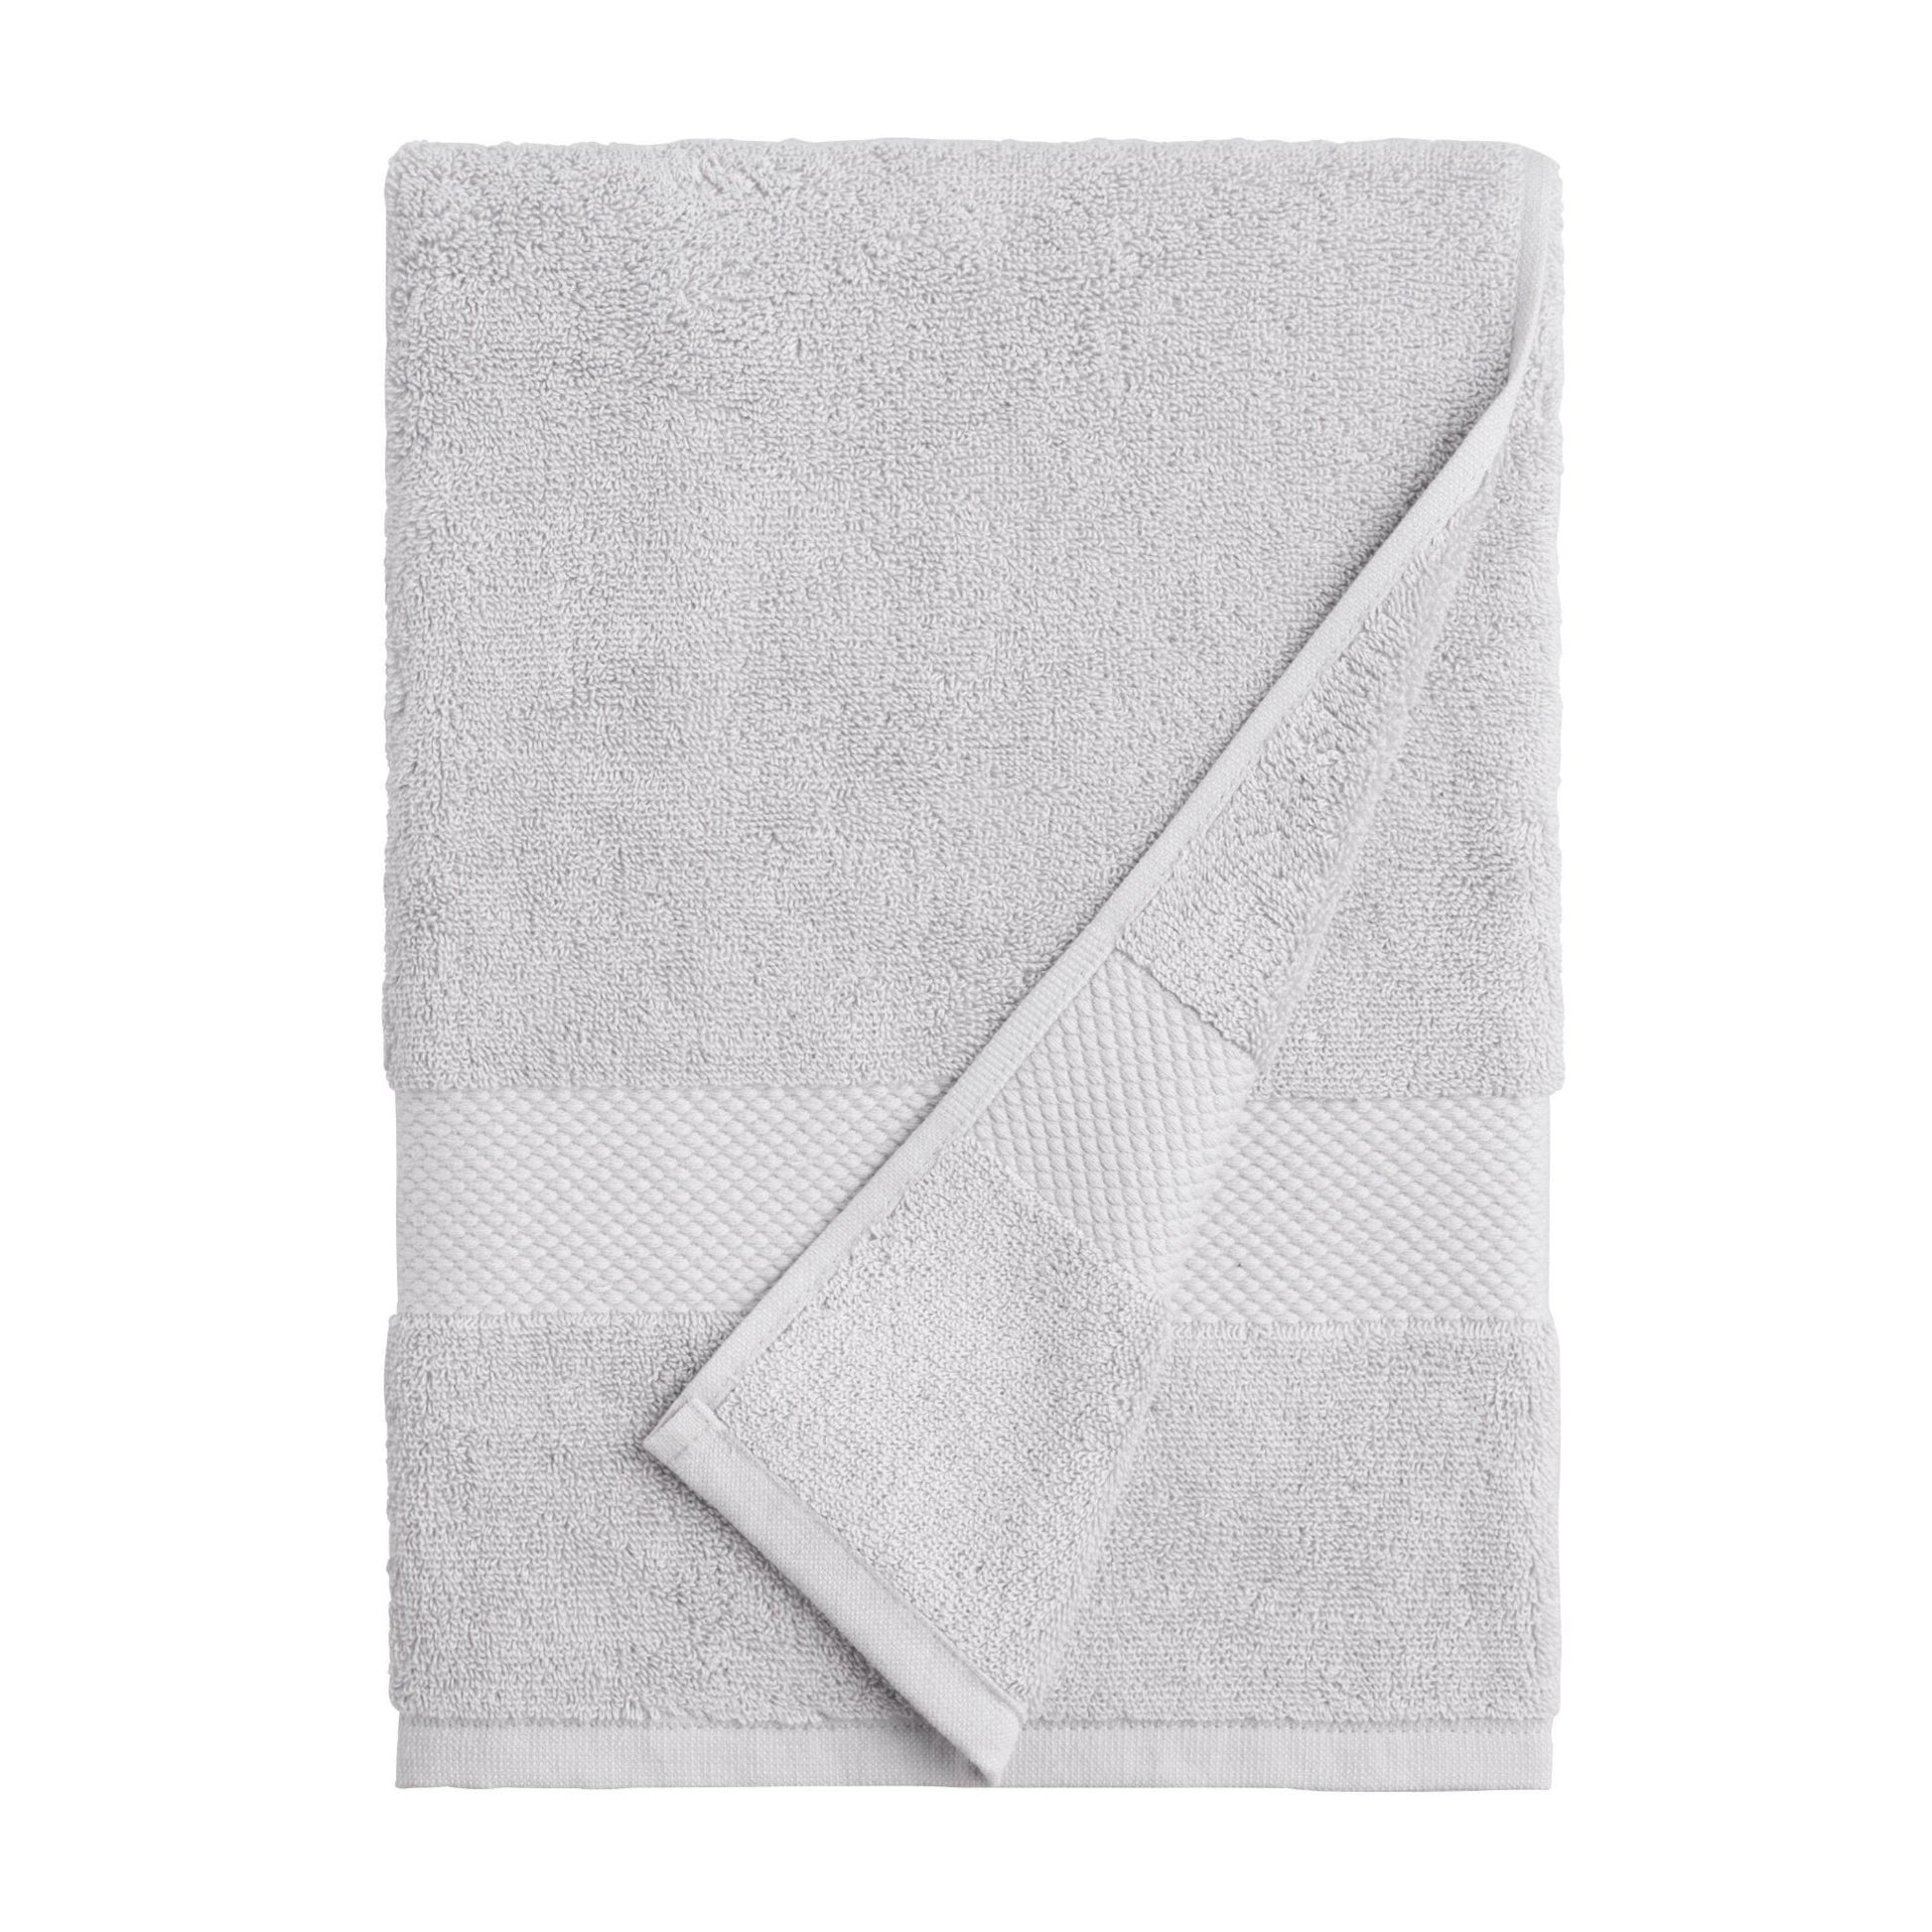  Towels big, 60 x 120cm